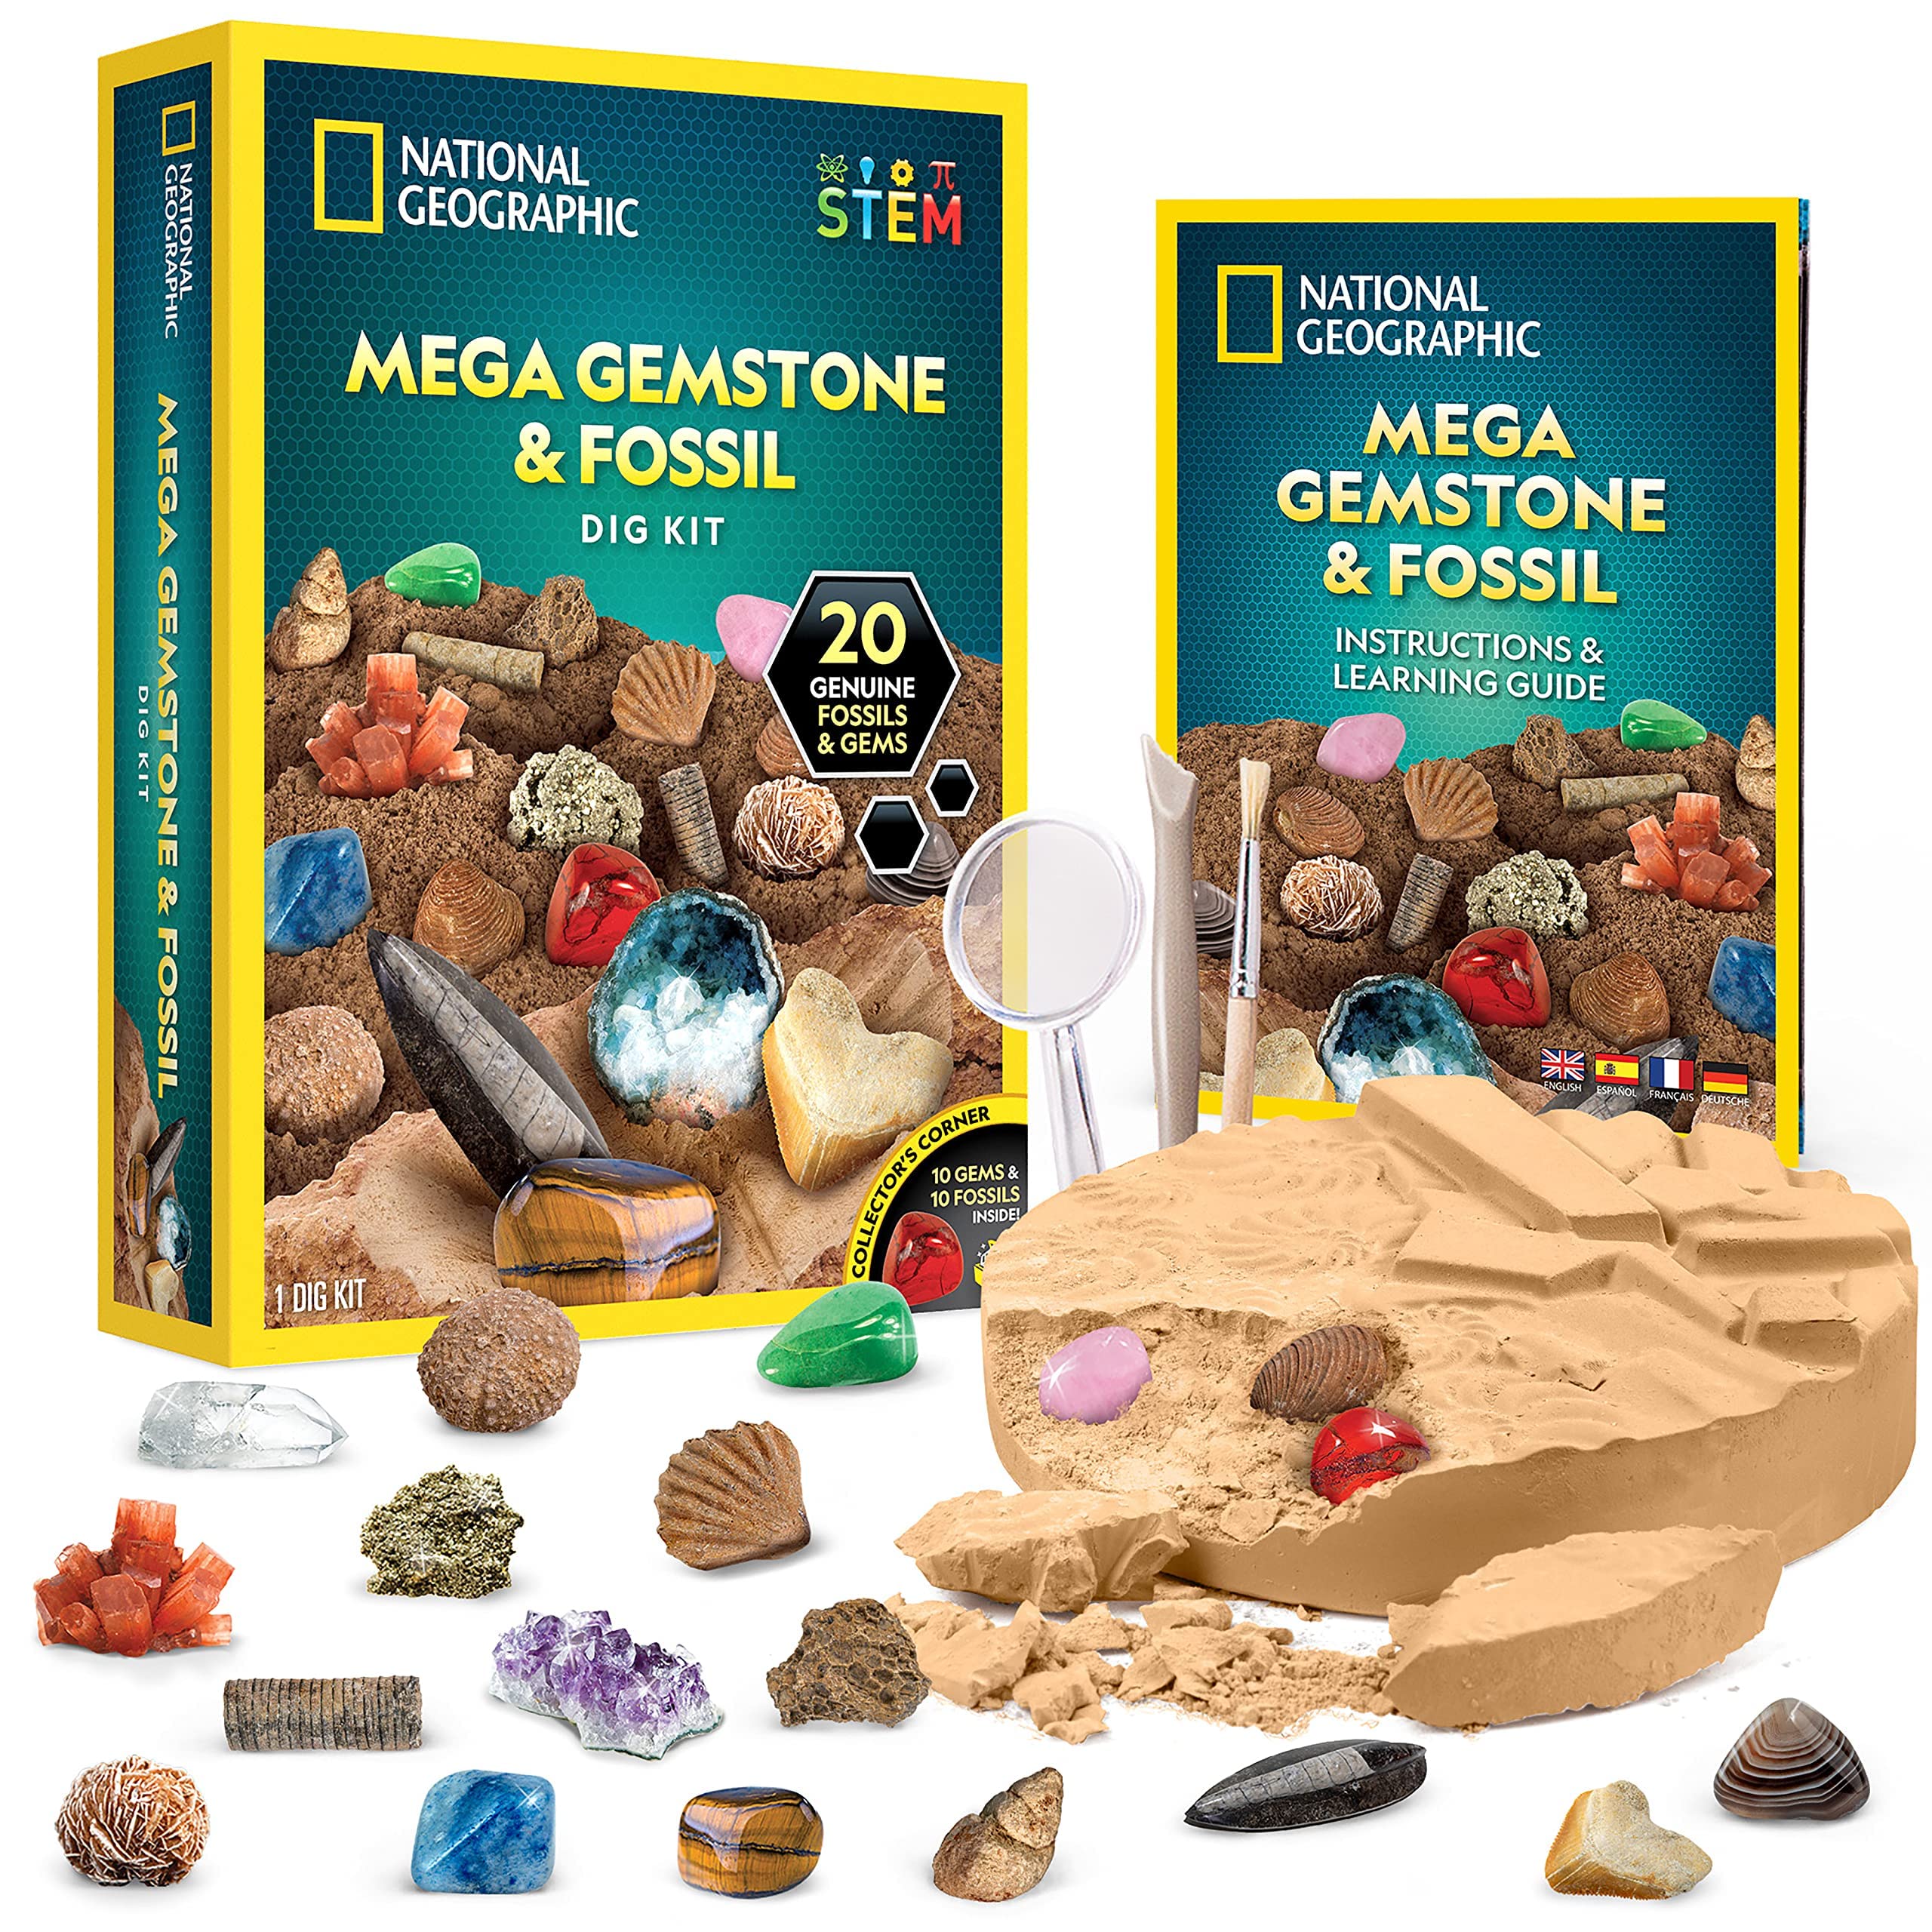 NATIONAL GEOGRAPHIC Ausgrabungs-Set für Riesen-Fossilien und Edelsteine – Grabe 10 echte Fossilien und 10 echte Edelsteine aus, tolles wissenschaftliches Mint-Geschenk für Geologie-Enthusiasten